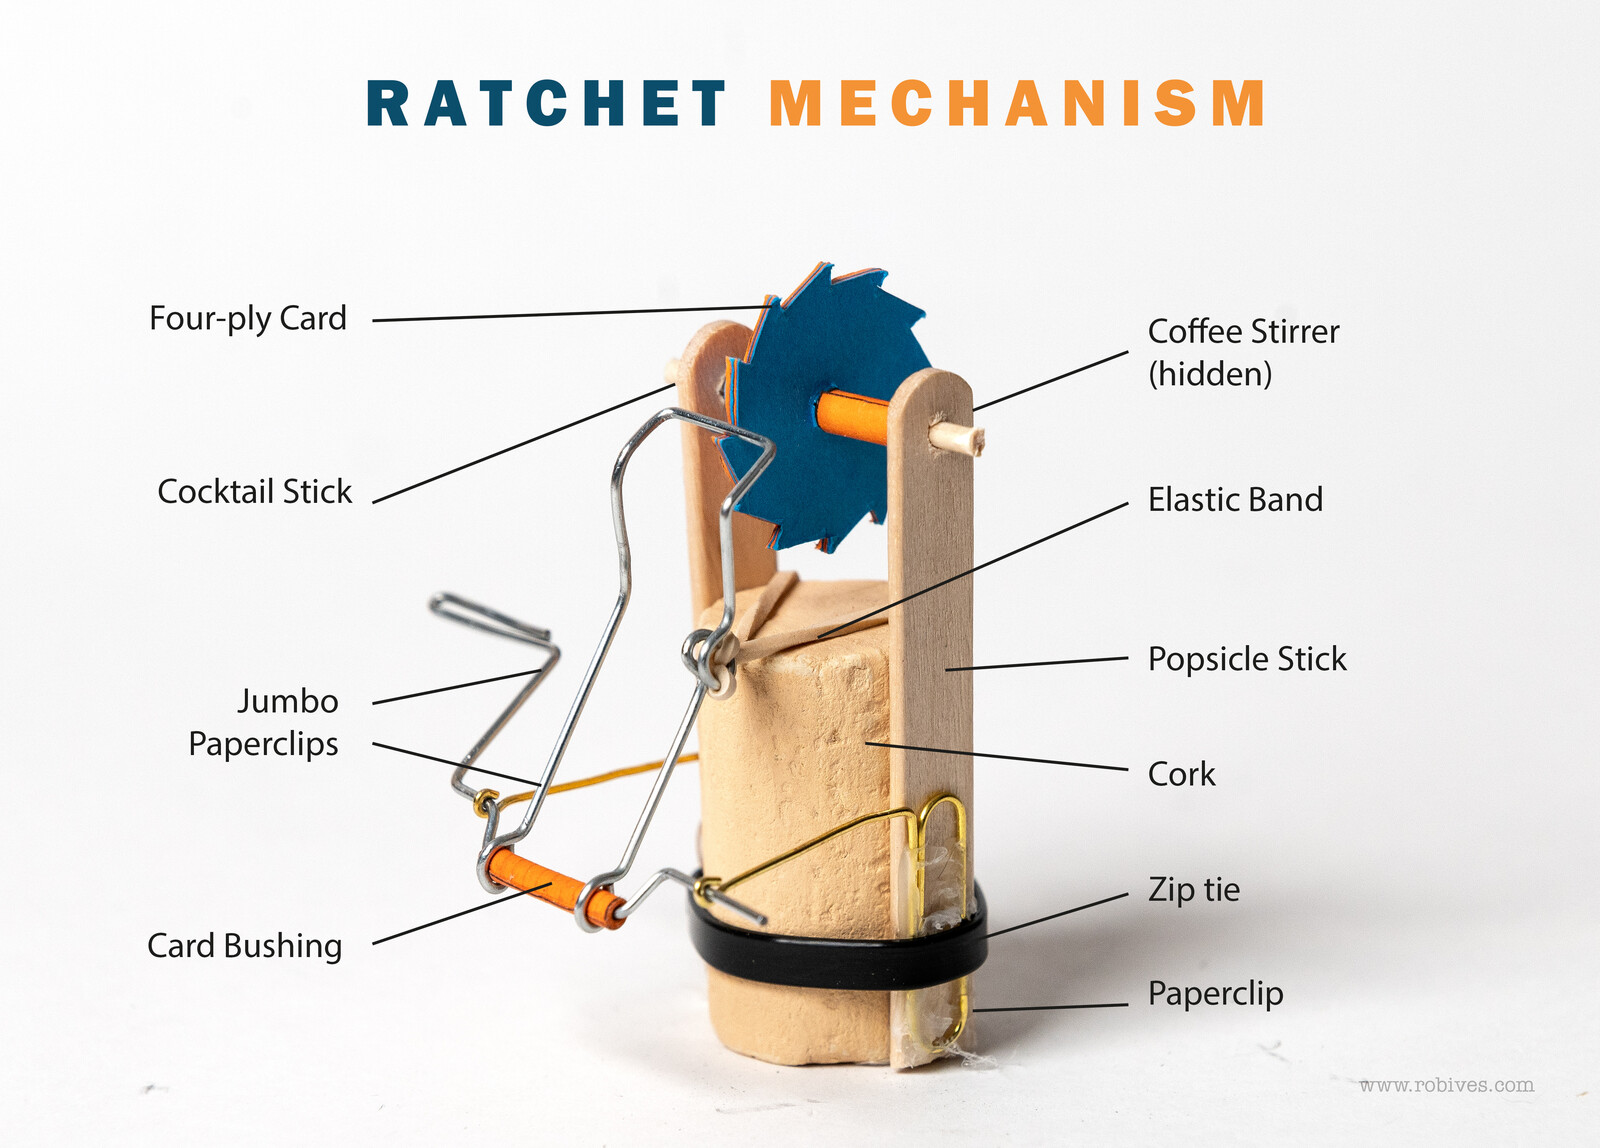 Ratchet Mechanism